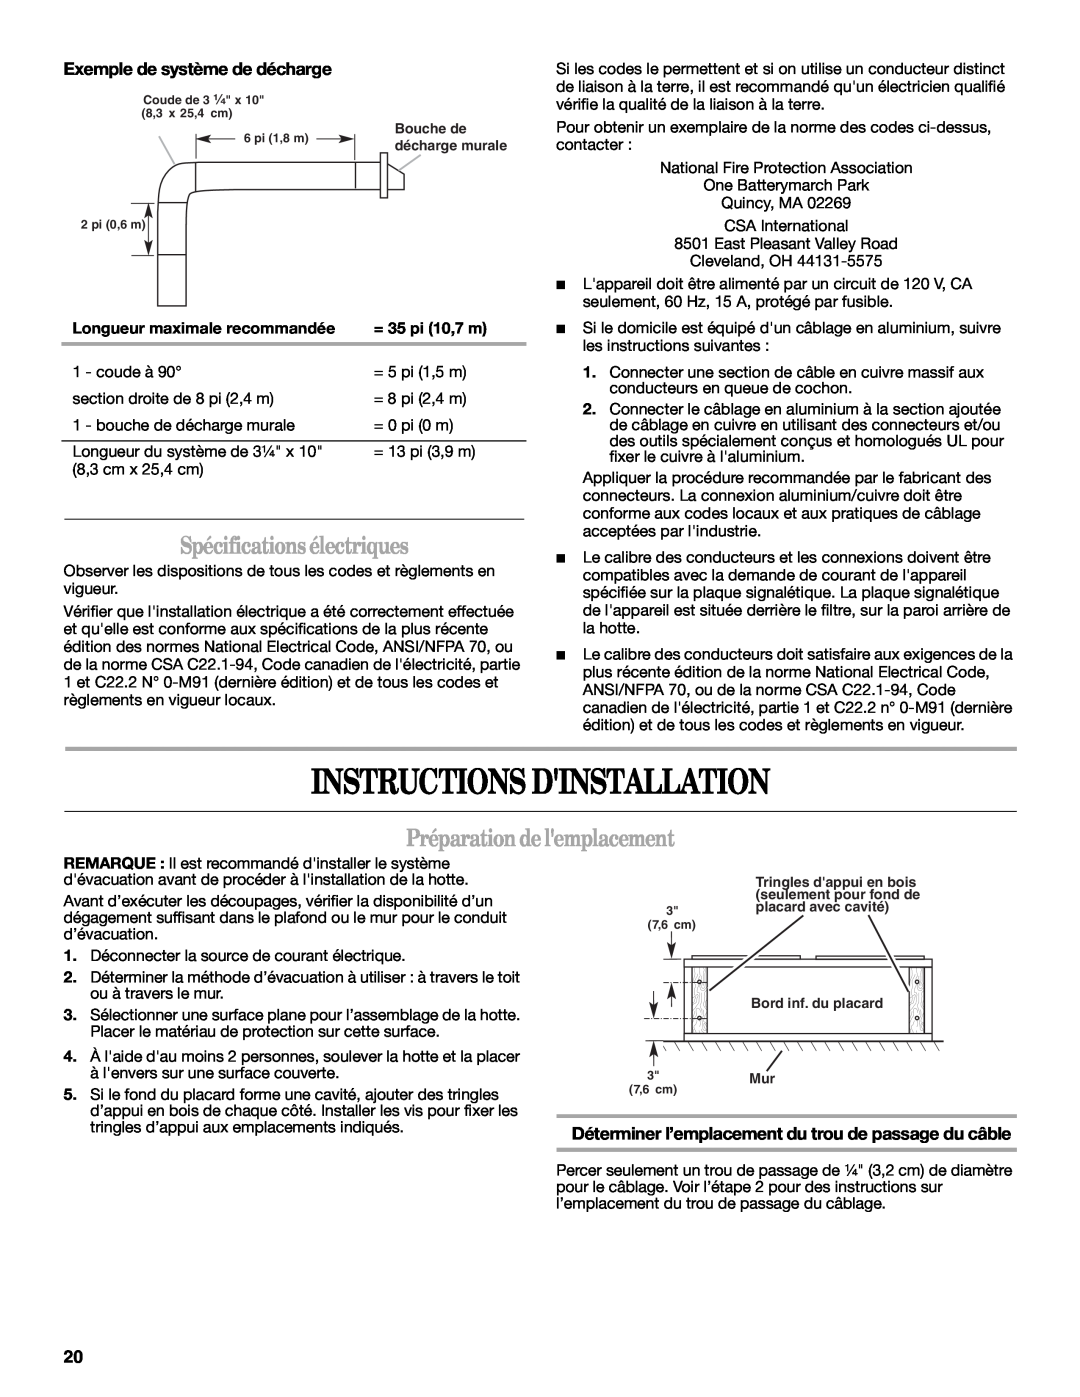 Whirlpool GXU7130DXS Instructions Dinstallation, Spécificationsélectriques, Préparationdelemplacement, = 35 pi 10,7 m 